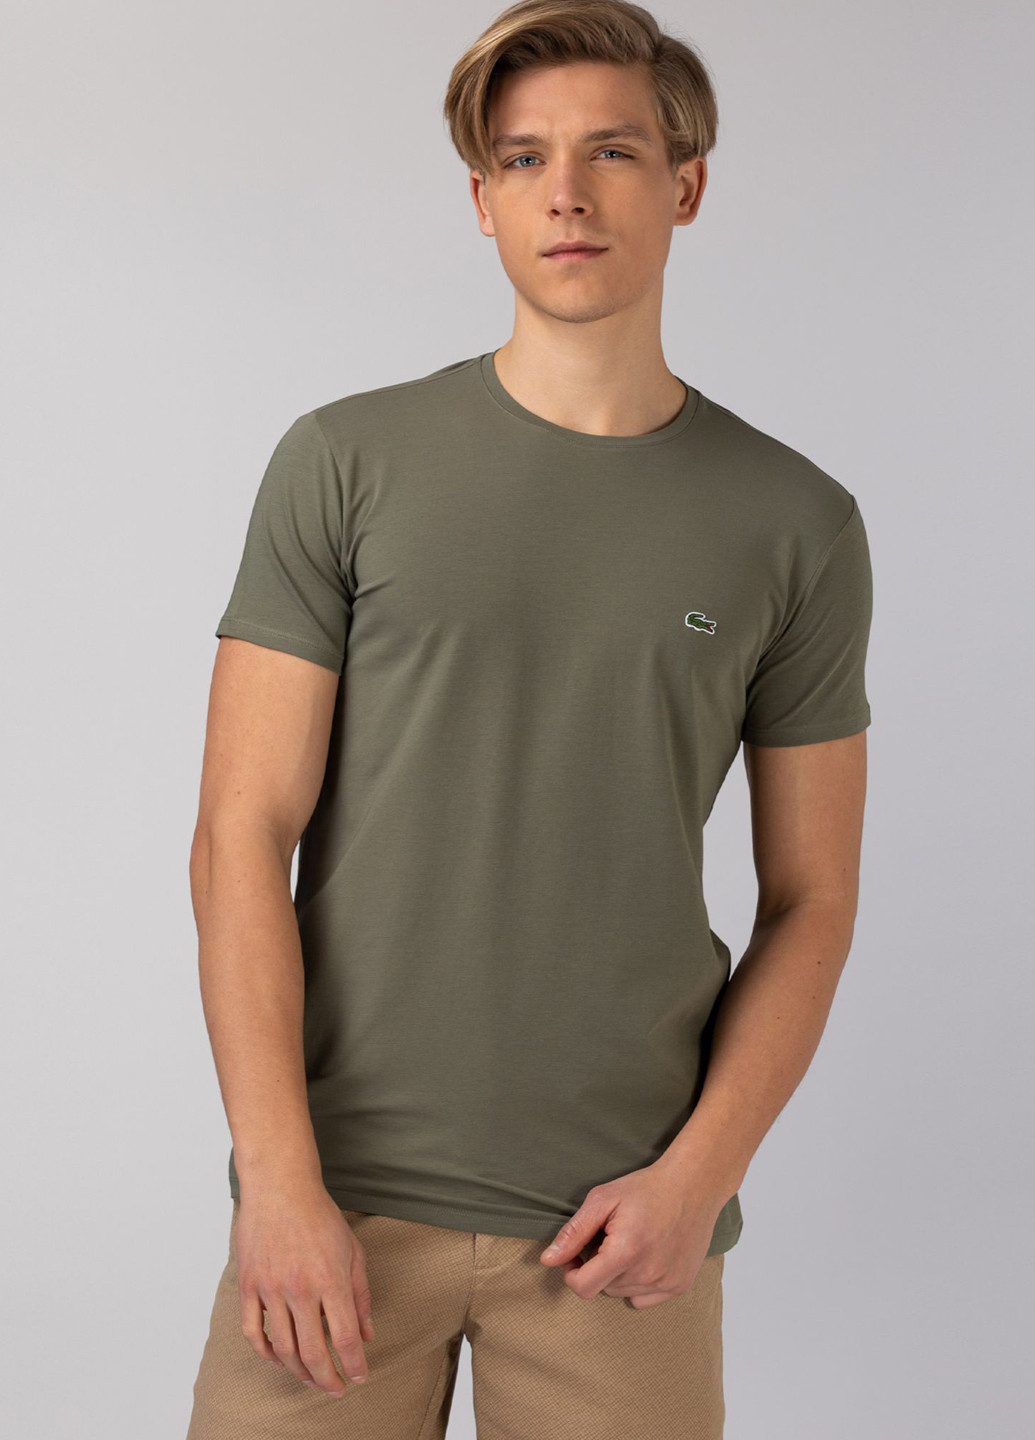 Хаки (оливковая) футболка Lacoste